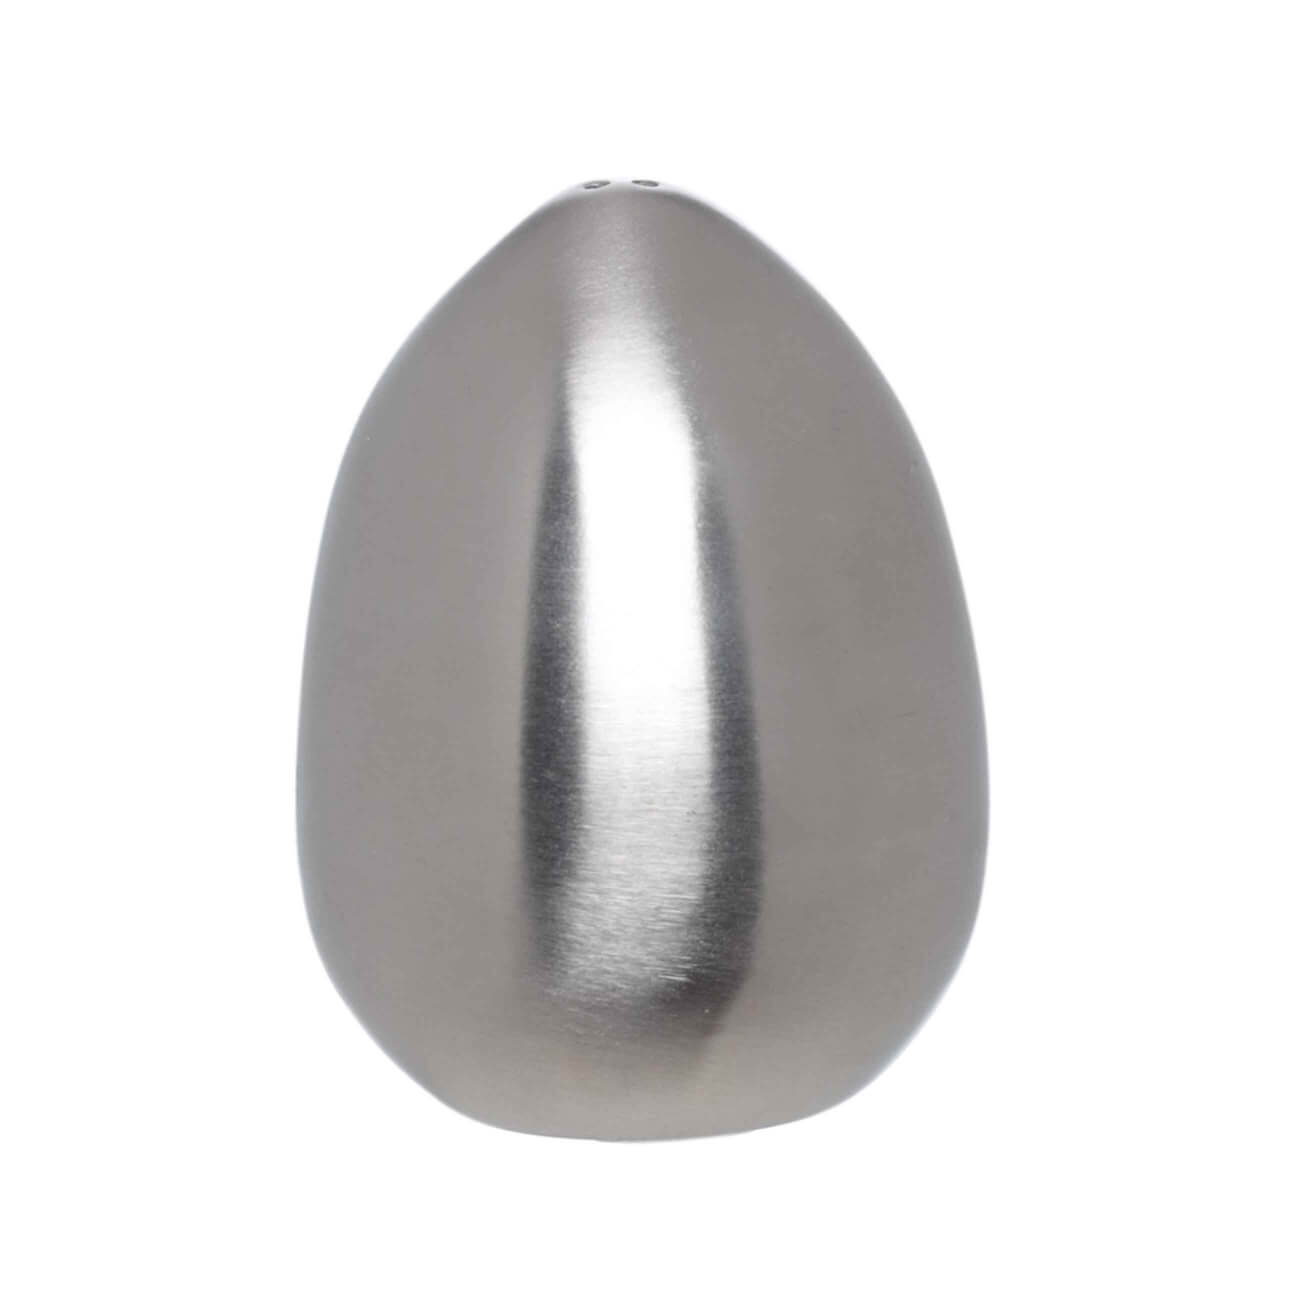 Емкость для соли или перца, 7 см, сталь, серебристая, Яйцо, Classic изображение № 1